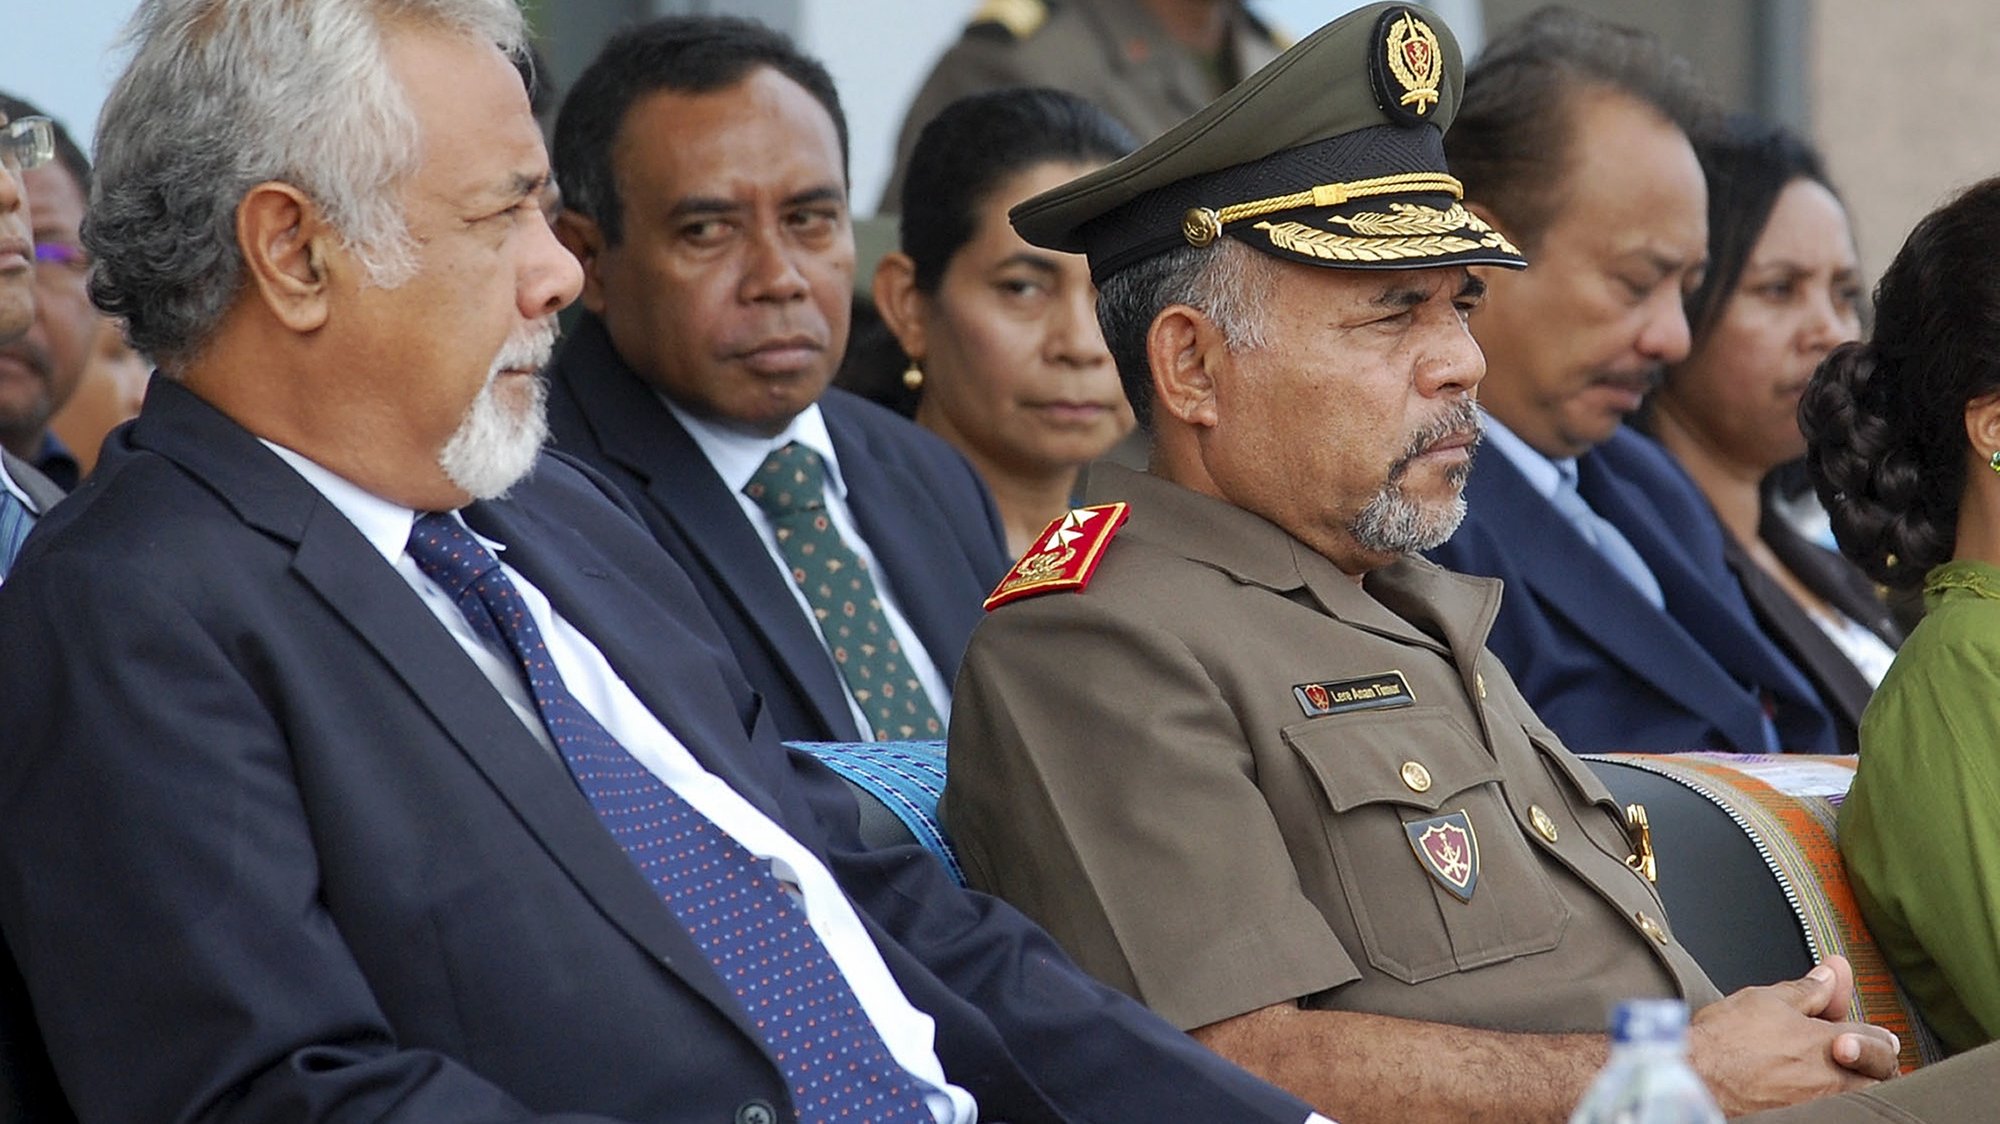 O primeiro-ministro Xanana Gusmão acompanhado pelo Chefe de Estado das forças Armadas, Major-general Lere Anan Timur